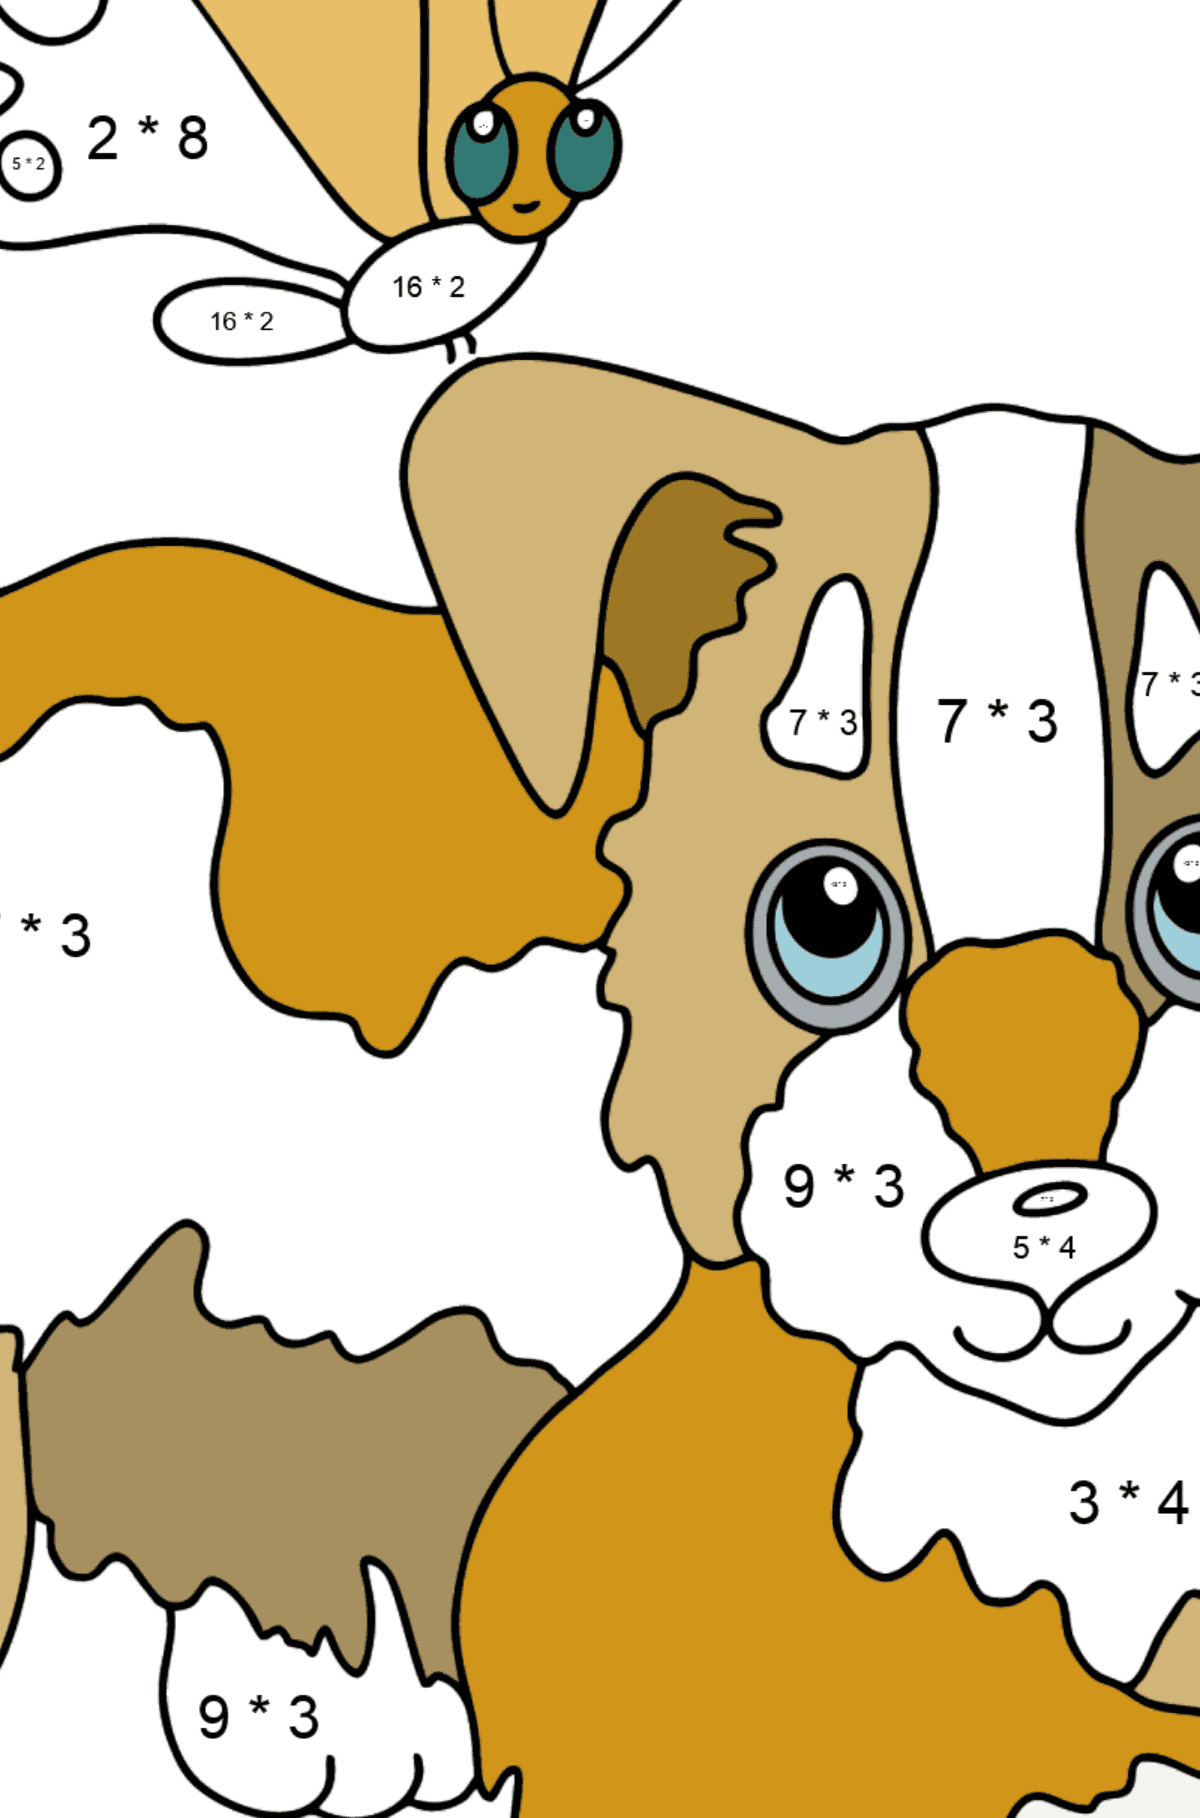 Dibujo para Colorear - Un Perro Jugando con una Mariposa - Colorear con Matemáticas - Multiplicaciones para Niños